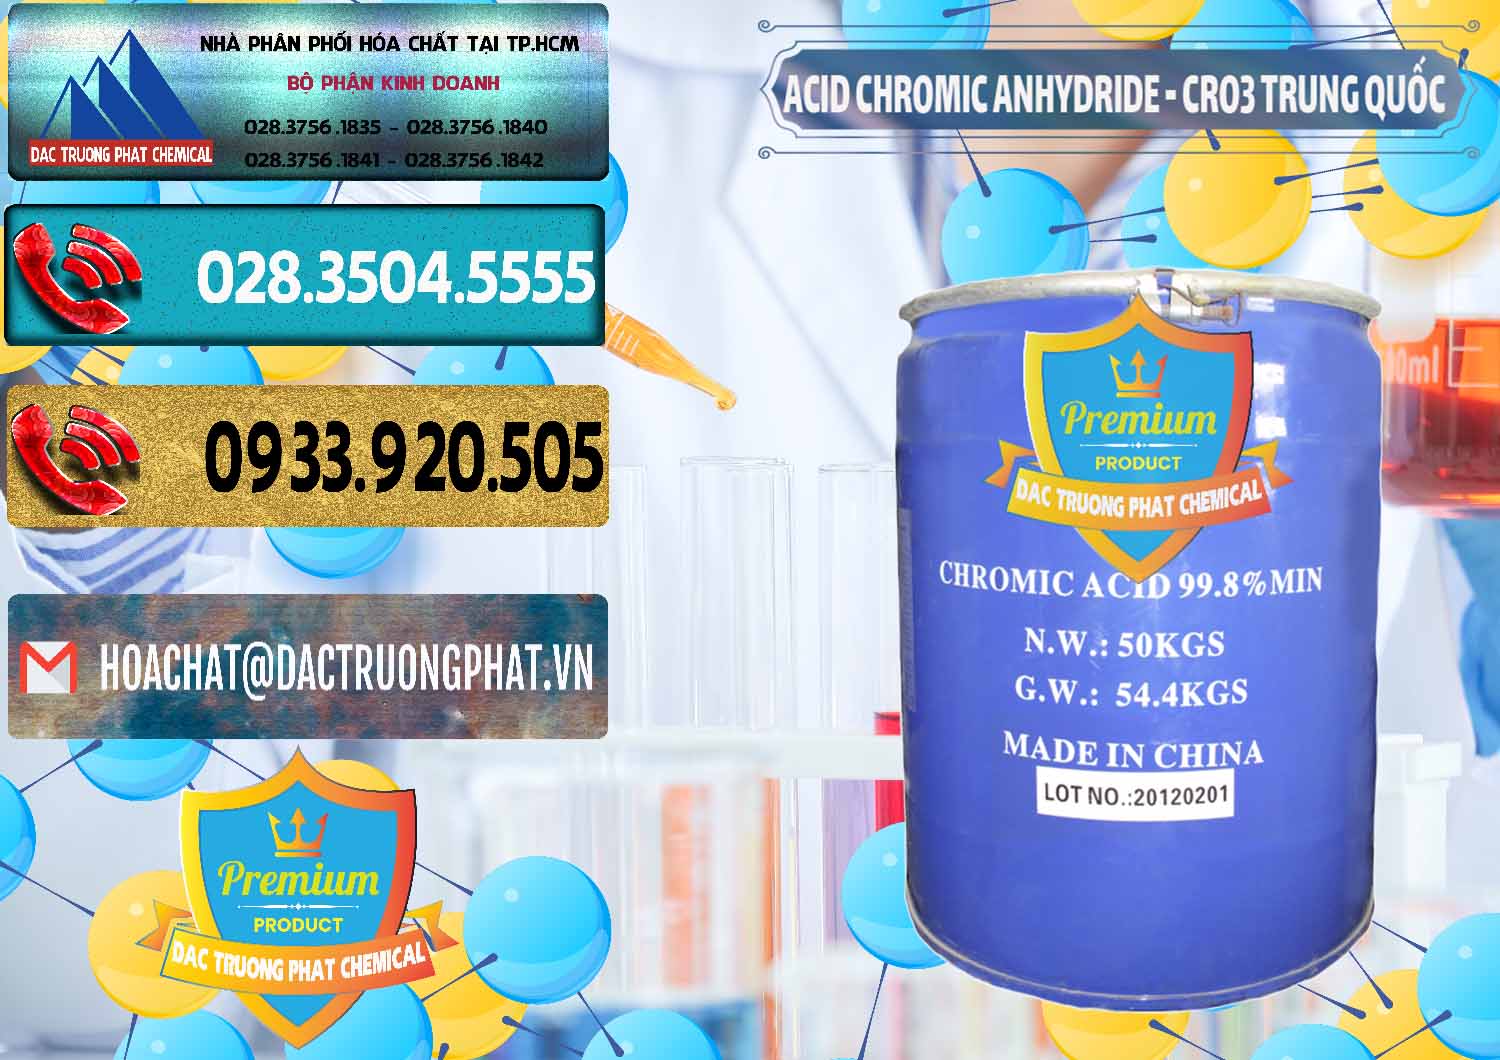 Nơi chuyên bán - phân phối Acid Chromic Anhydride - Cromic CRO3 Trung Quốc China - 0007 - Nhà phân phối và cung ứng hóa chất tại TP.HCM - hoachatdetnhuom.com